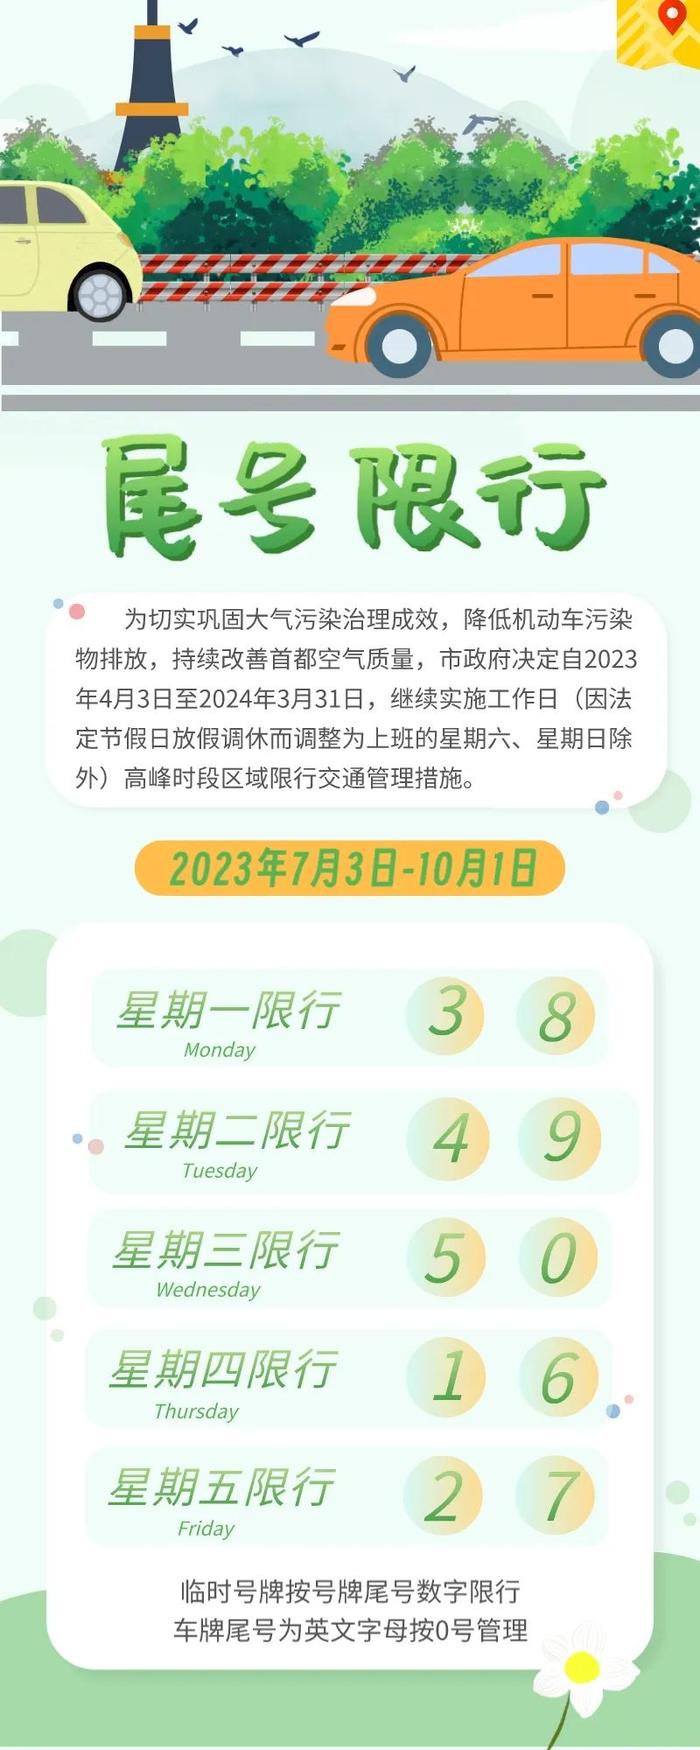 7月3日起北京将实施新一轮尾号限行，周一限行尾号为3和8